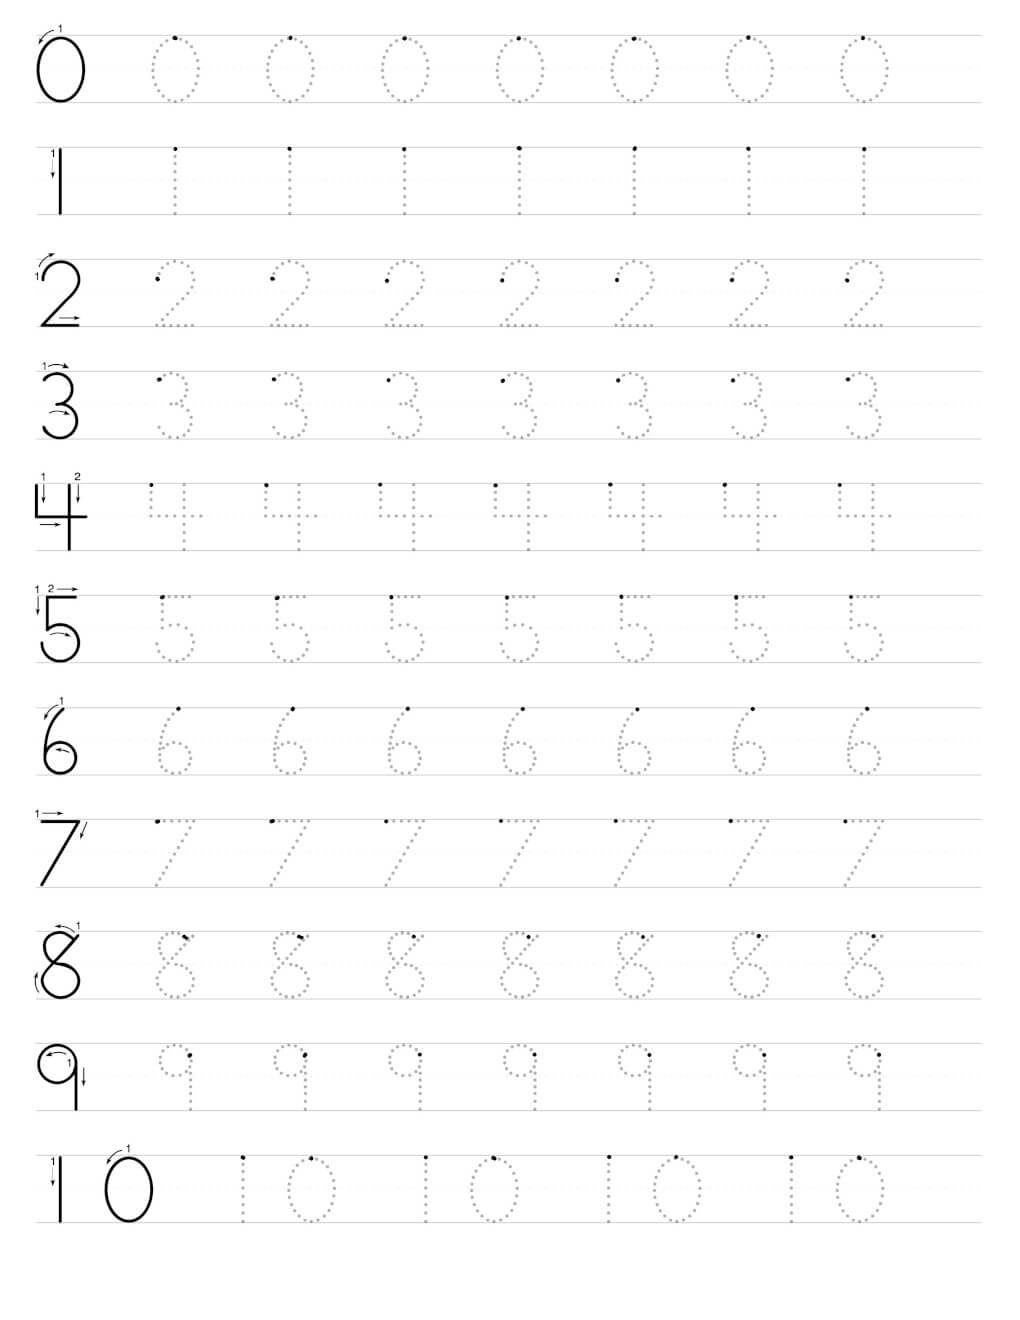 Free Number Tracing Worksheet Pdf File For 1st Grade And Kindergarten 